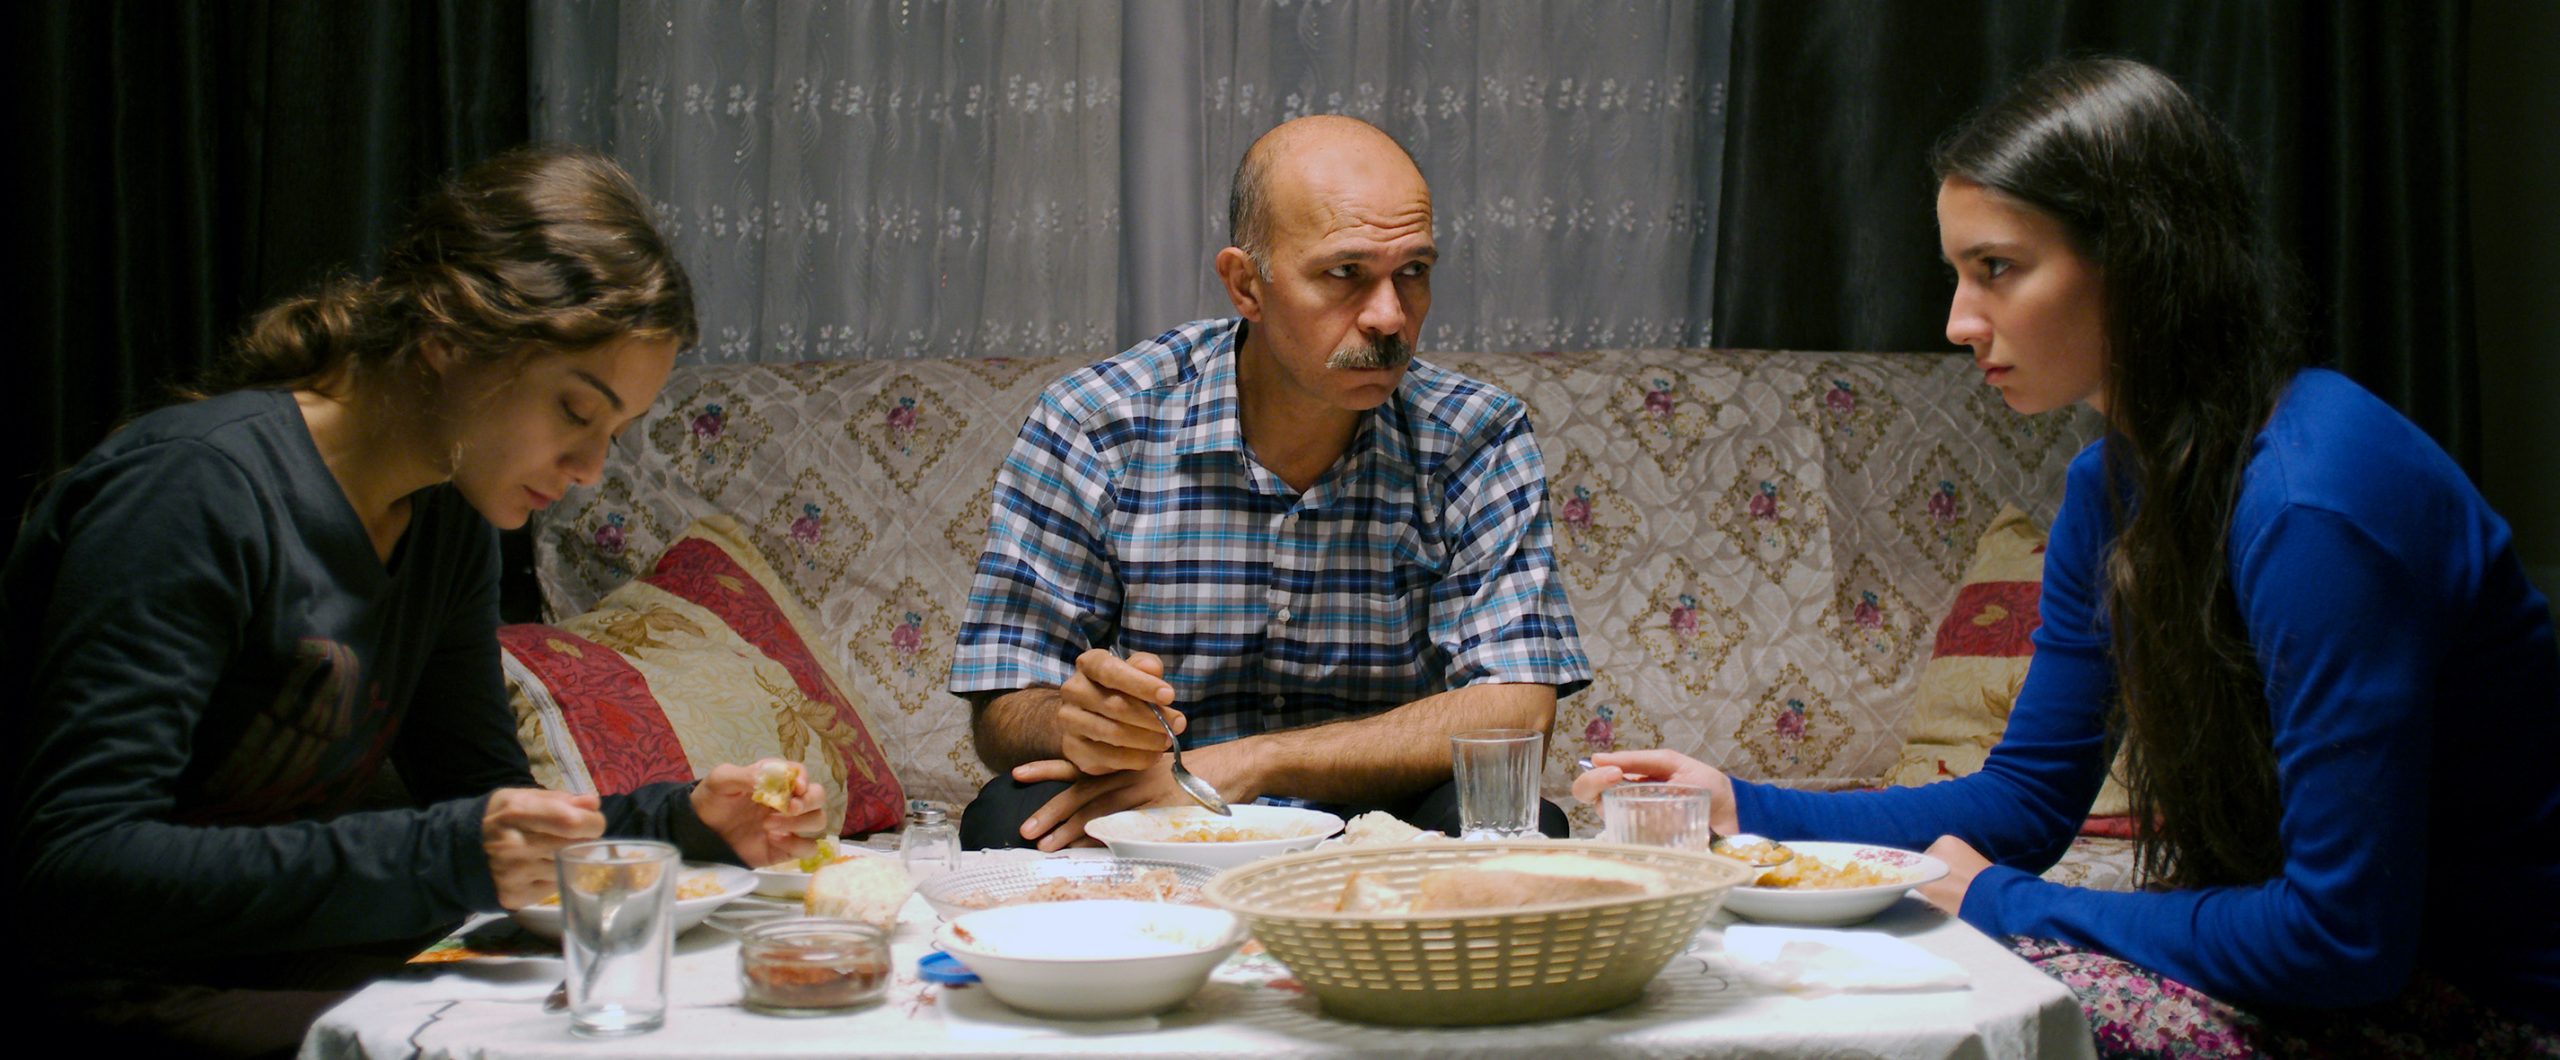 Filmstill aus dem Film "Sibel": Zwei junge Frauen und ein älterer Mann sitzen in einem Wohnzimmer beim Essen.